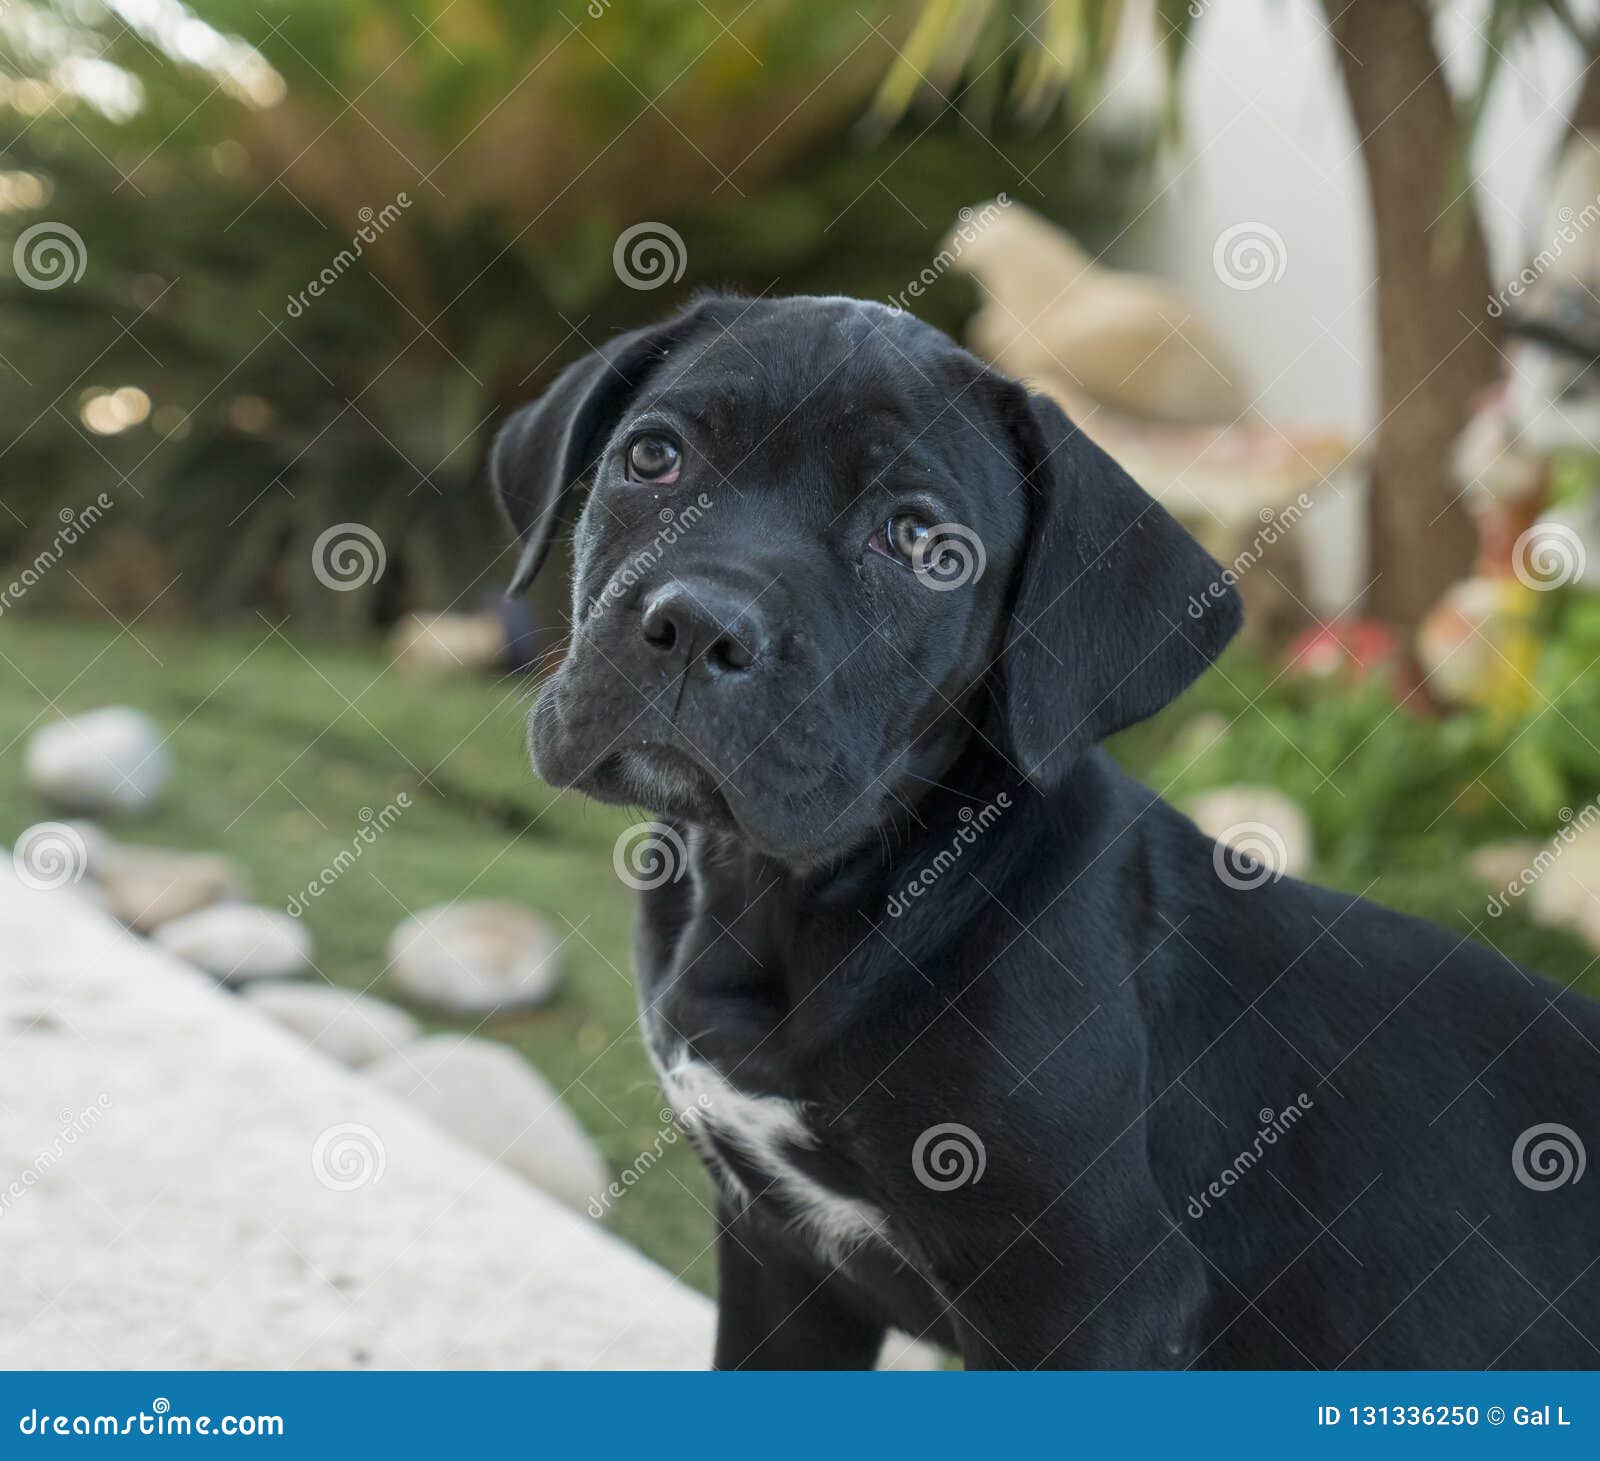 female cane corso puppy